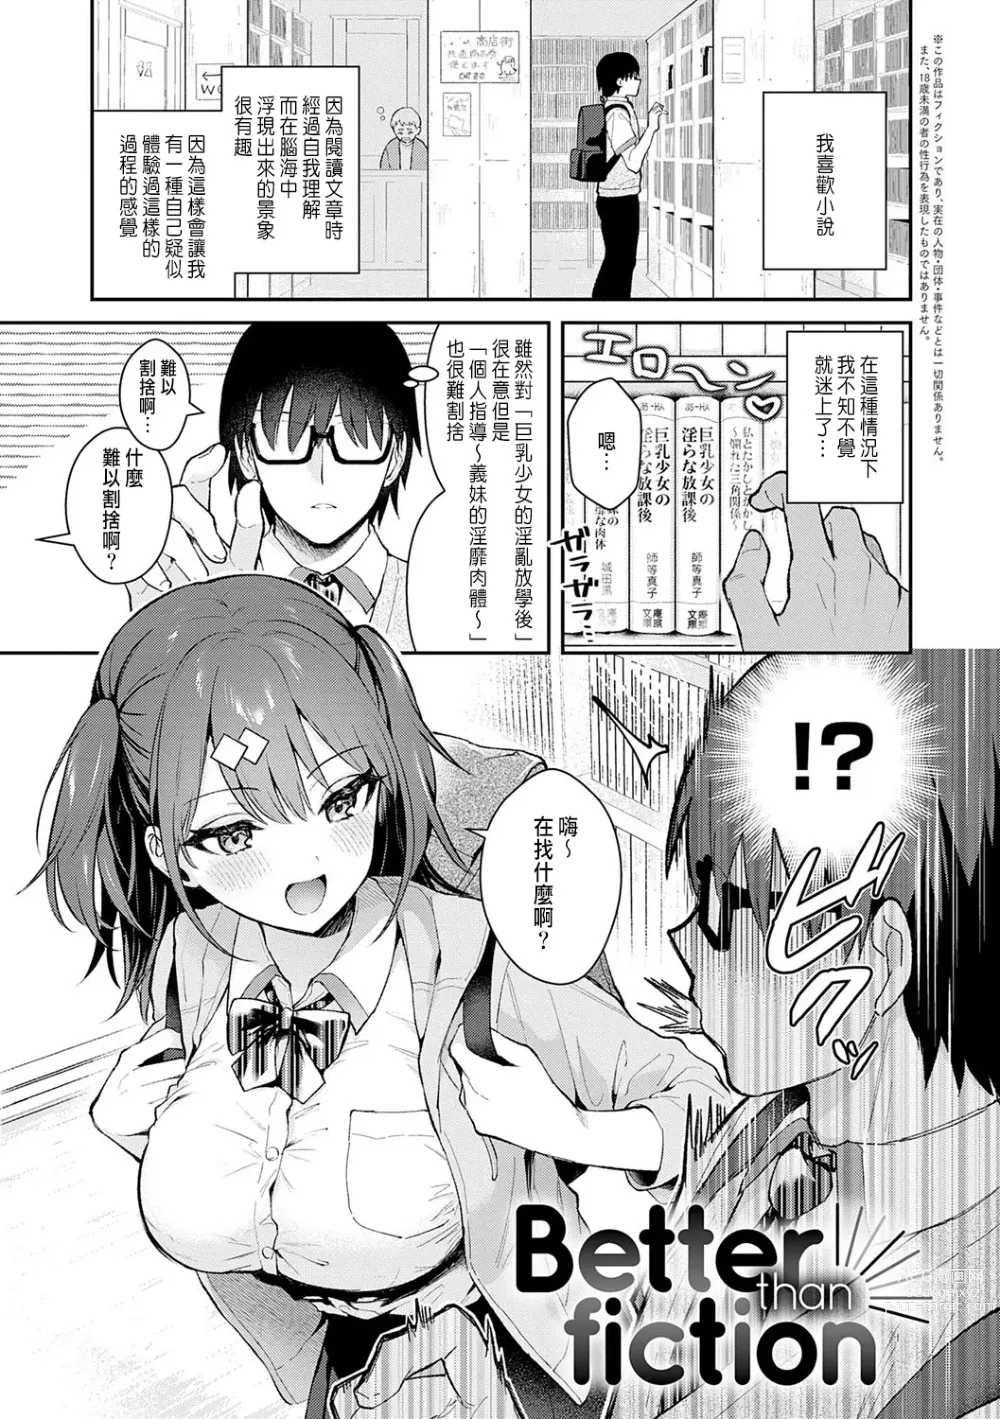 Page 2 of manga Better than fiction